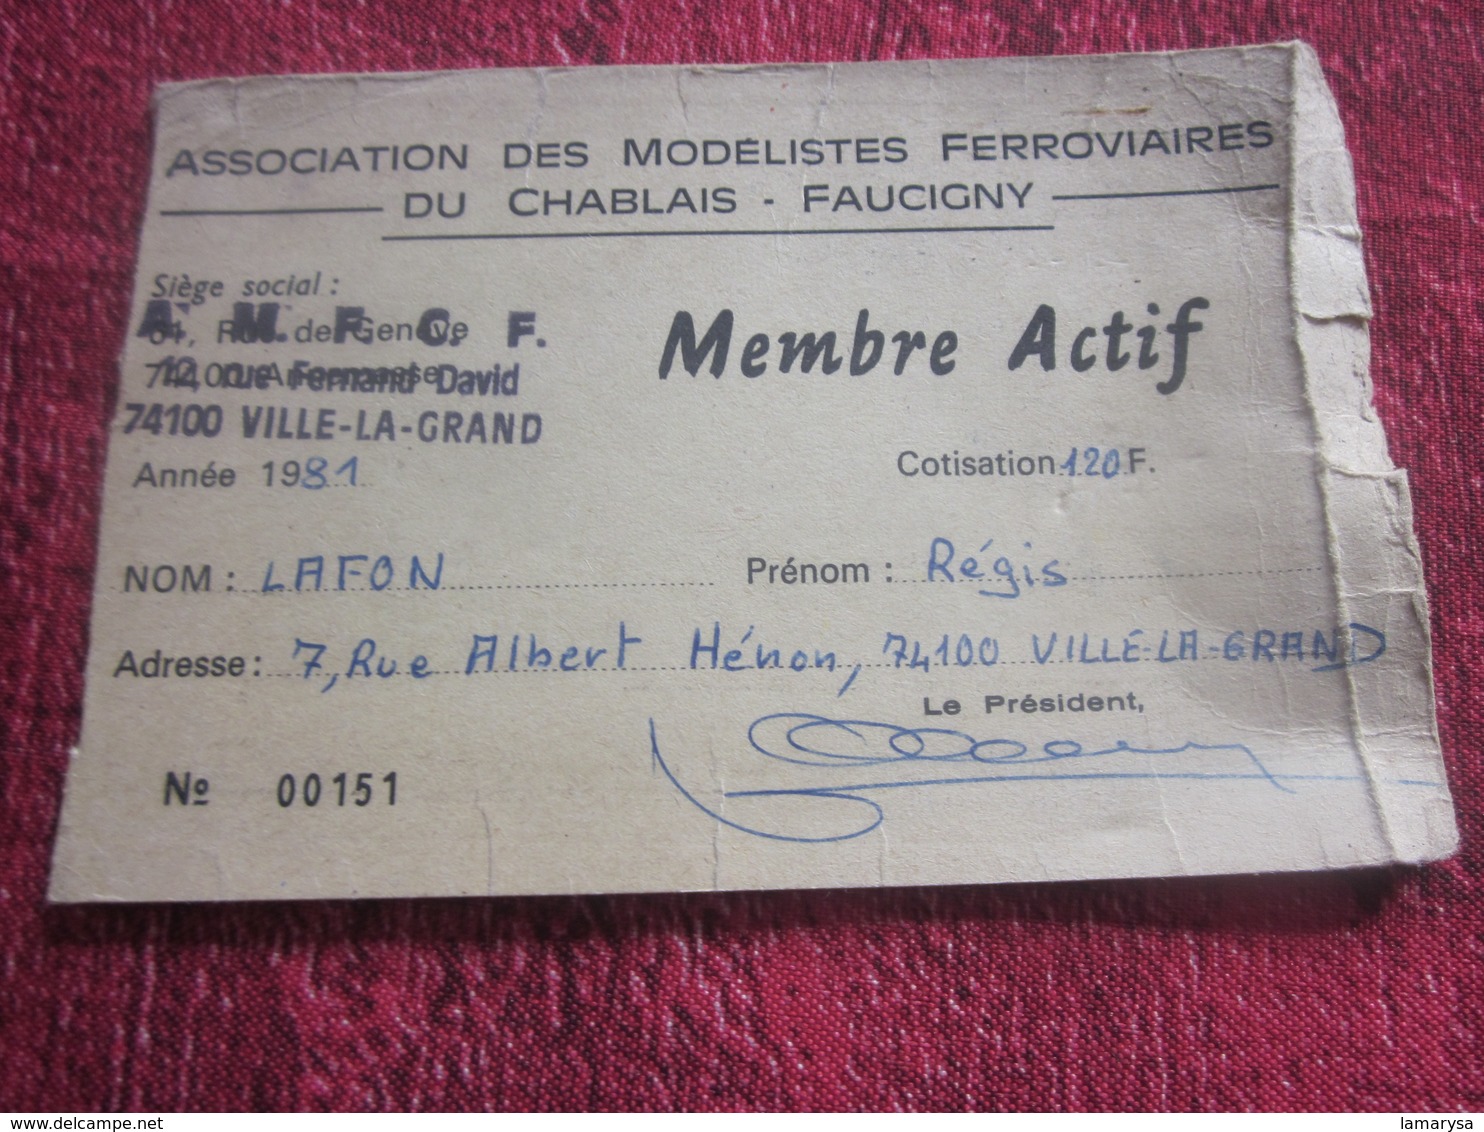 CHABLAIS- FAUCIGNY--ASSOCIATION MODÉLISTES FERROVIAIRES LAF. RÉGIS VILLE-LA-GRAND HAUTE SAVOIE 1981-CARTE MEMBRE ACTIF - Chemin De Fer